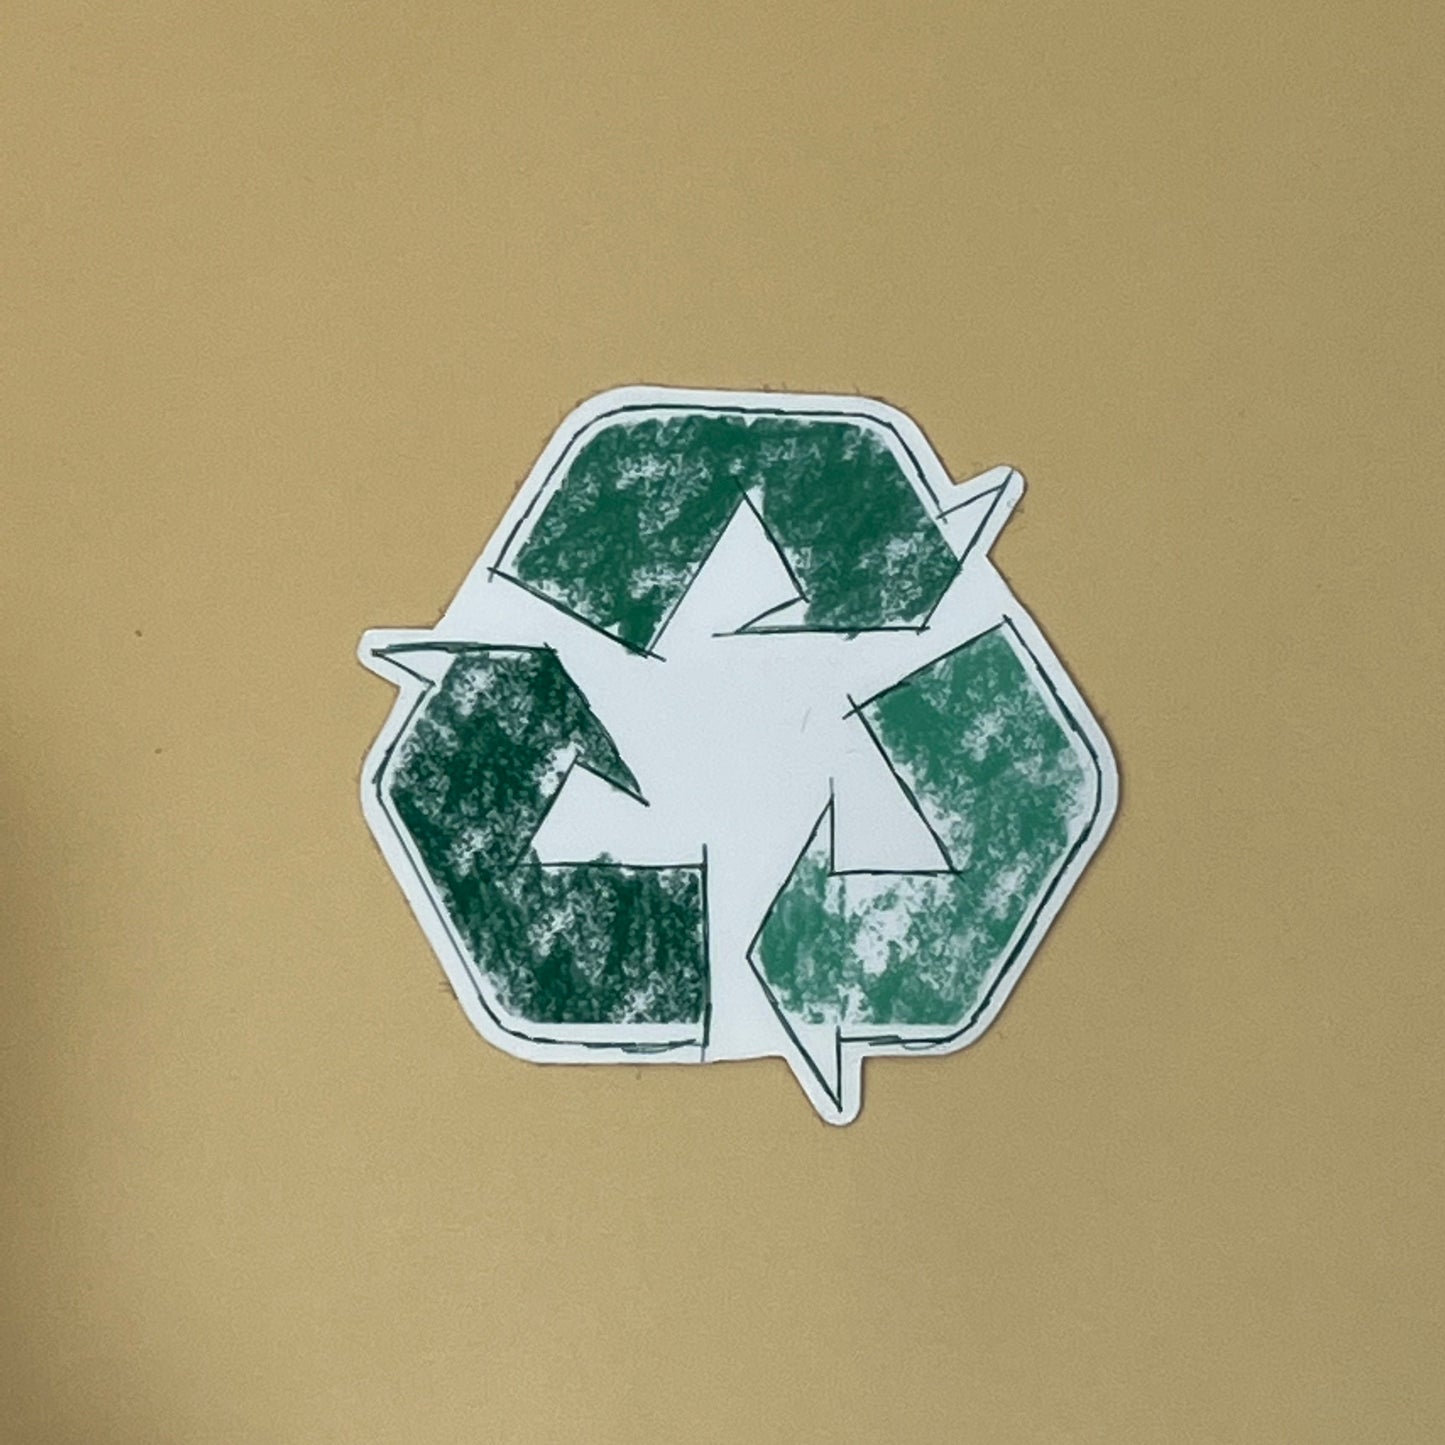 Recycle Waterproof Sticker